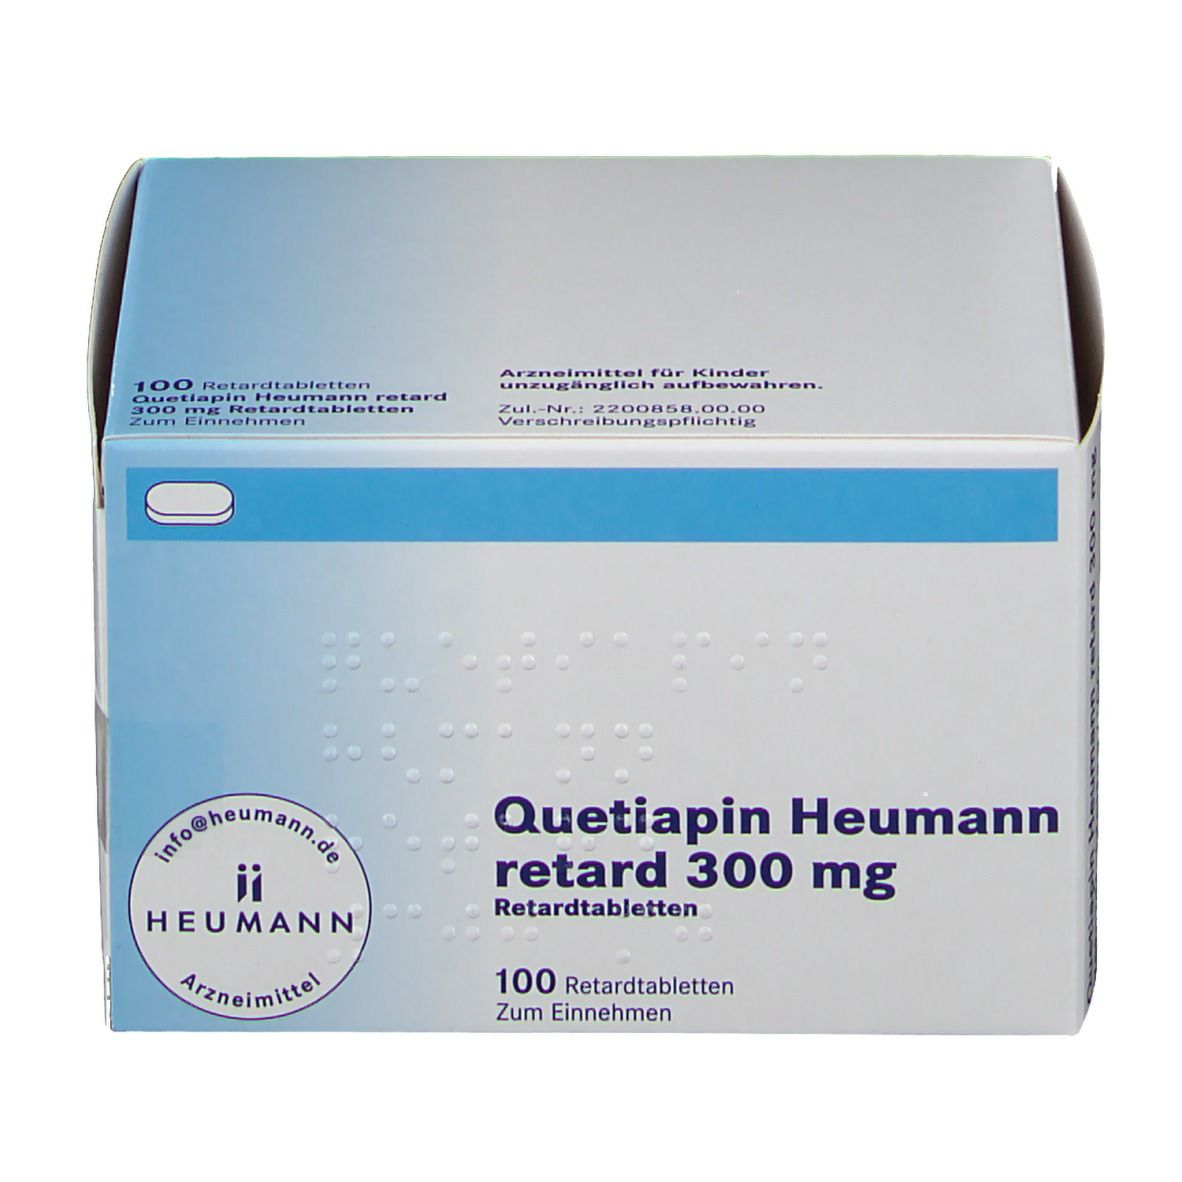 Quetipin Heumann retard 300 mg